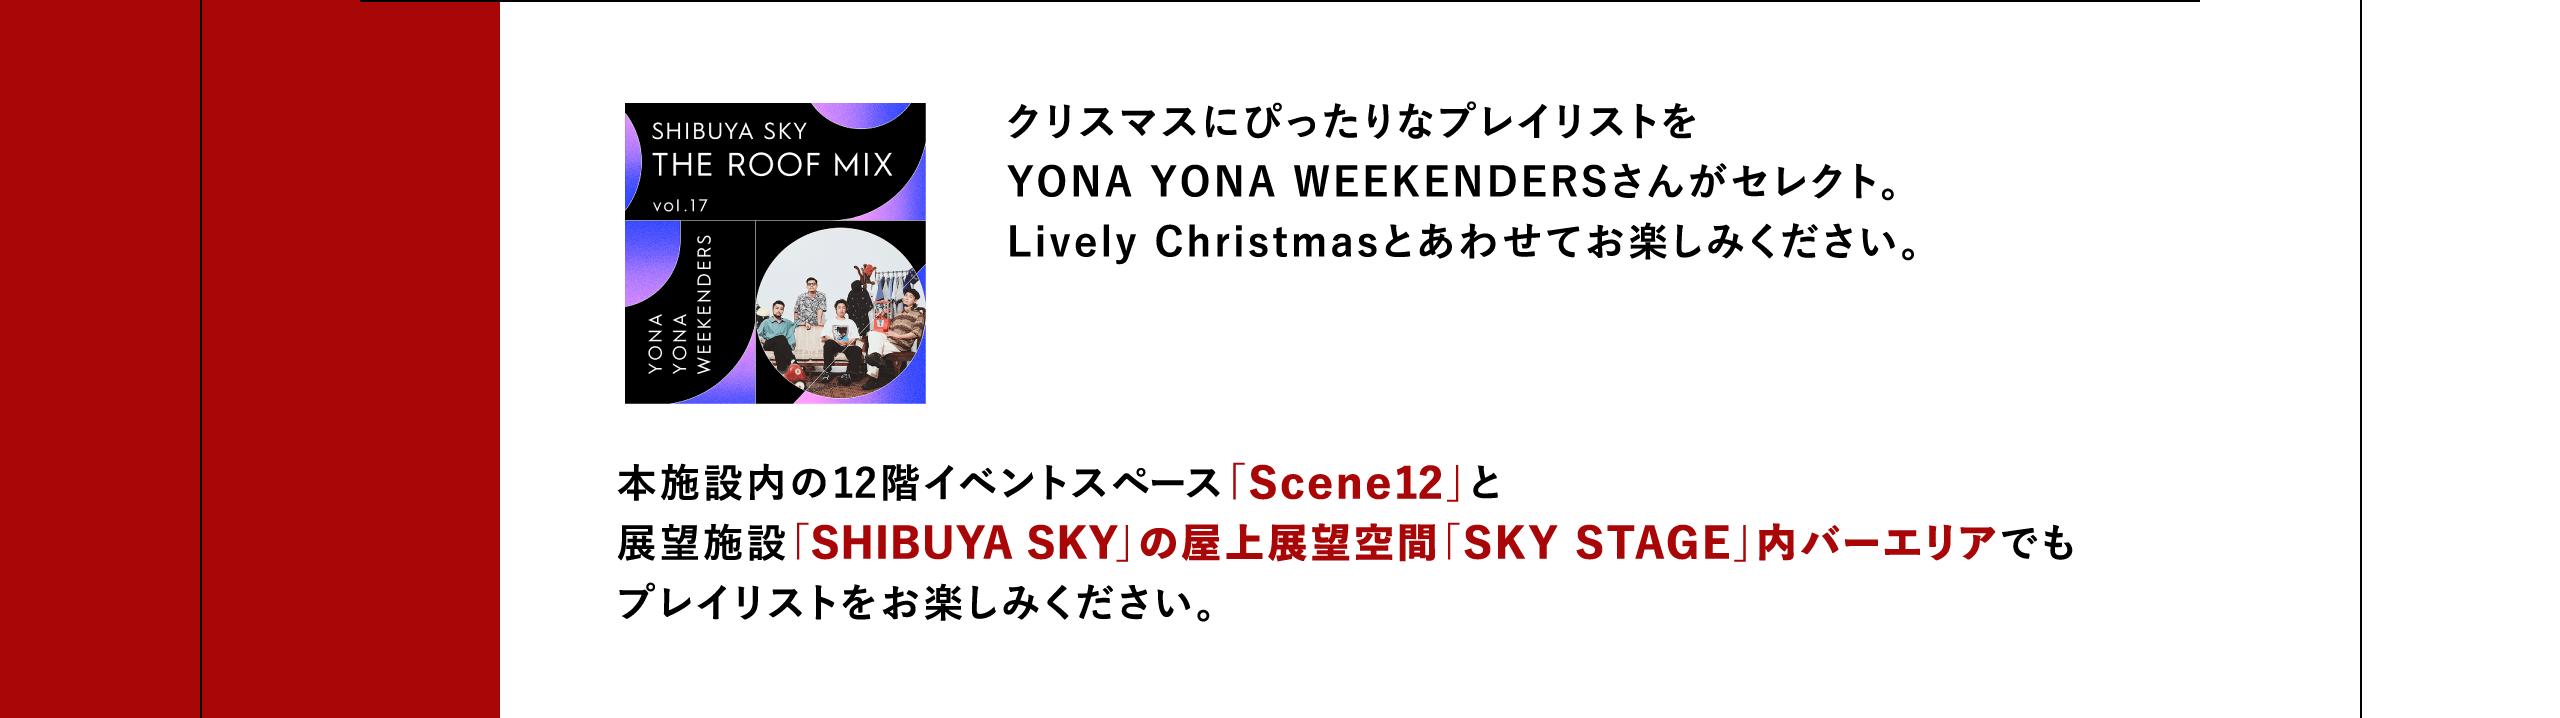 クリスマスにぴったりなプレイリストをYONA YONA WEEKENDERSさんがセレクト。Lively Christmasとあわせてお楽しみください。本施設内の12階イベントスペース「Scene12」と展望施設「SHIBUYA SKY」の屋上展望空間「SKY STAGE」内バーエリアでもプレイリストをお楽しみください。